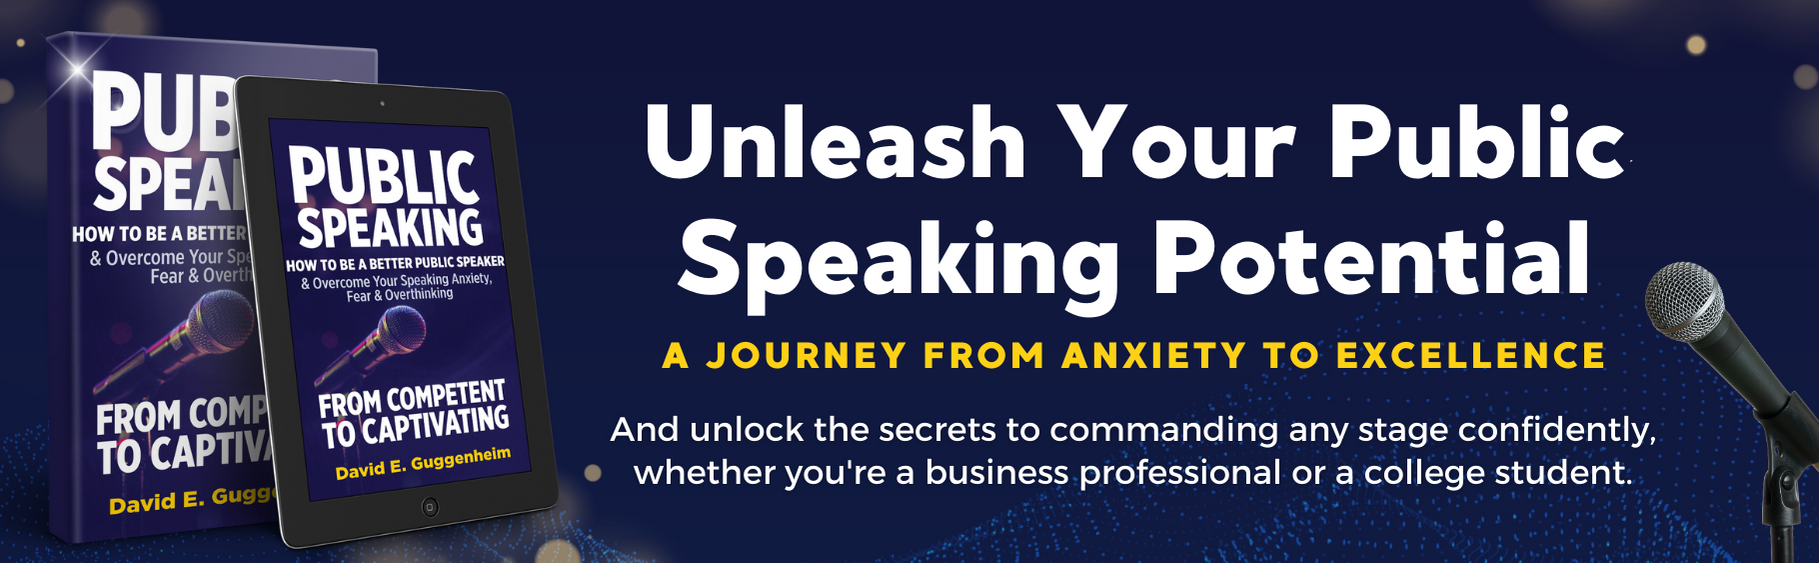 Public Speaking - Unleash your public speaking potential